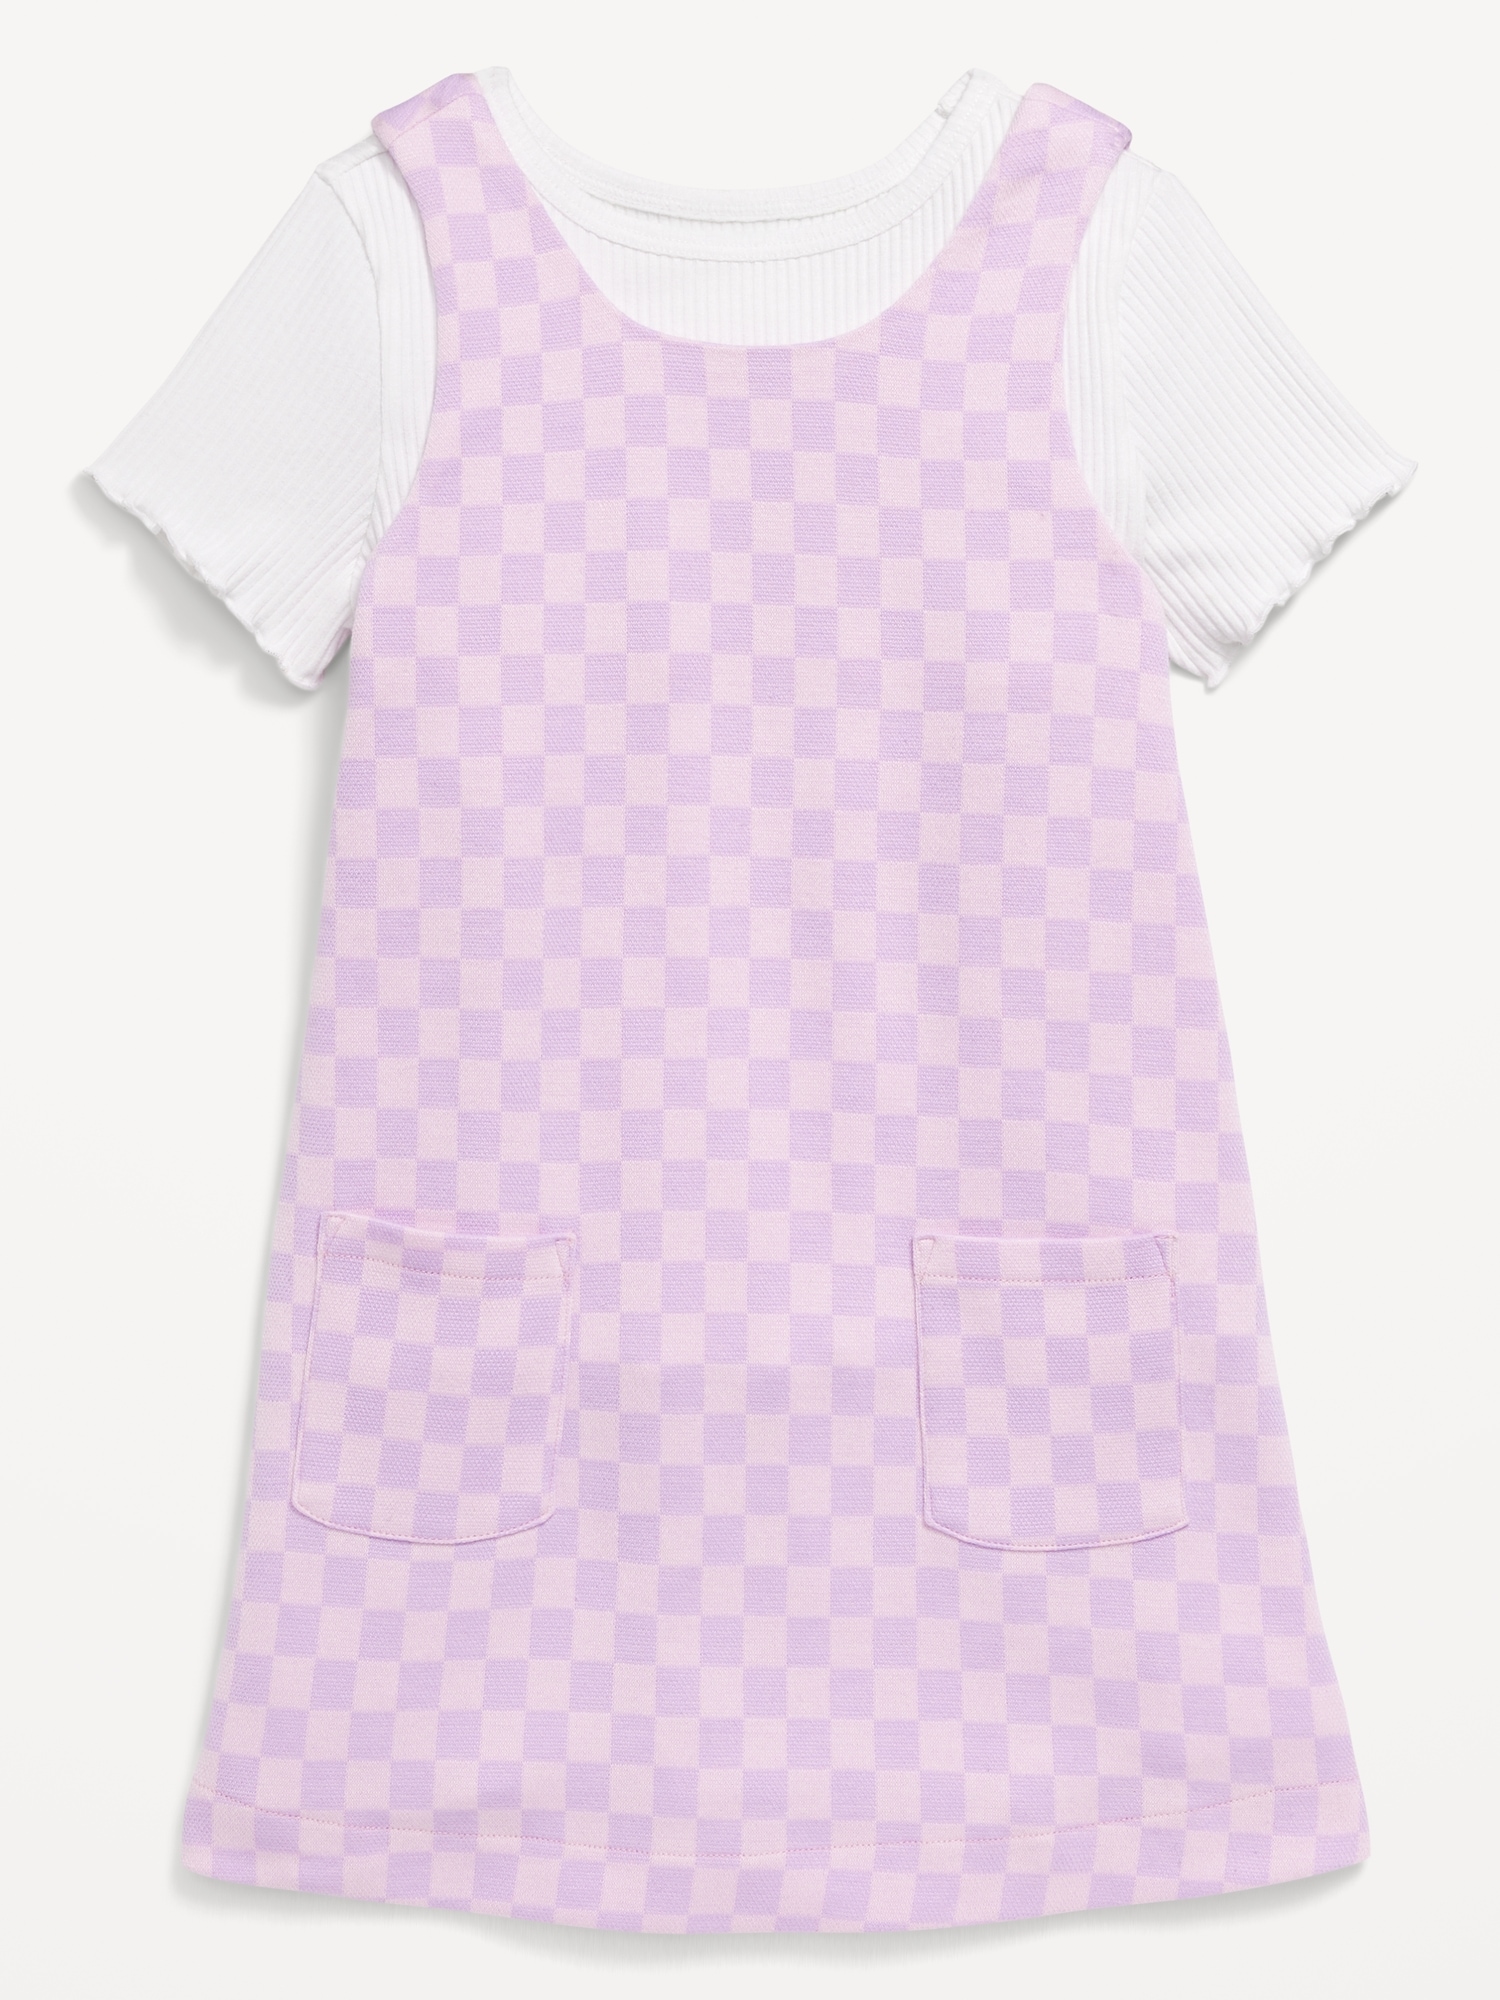 Sleeveless Pocket Dress and T-Shirt Set for Toddler Girls